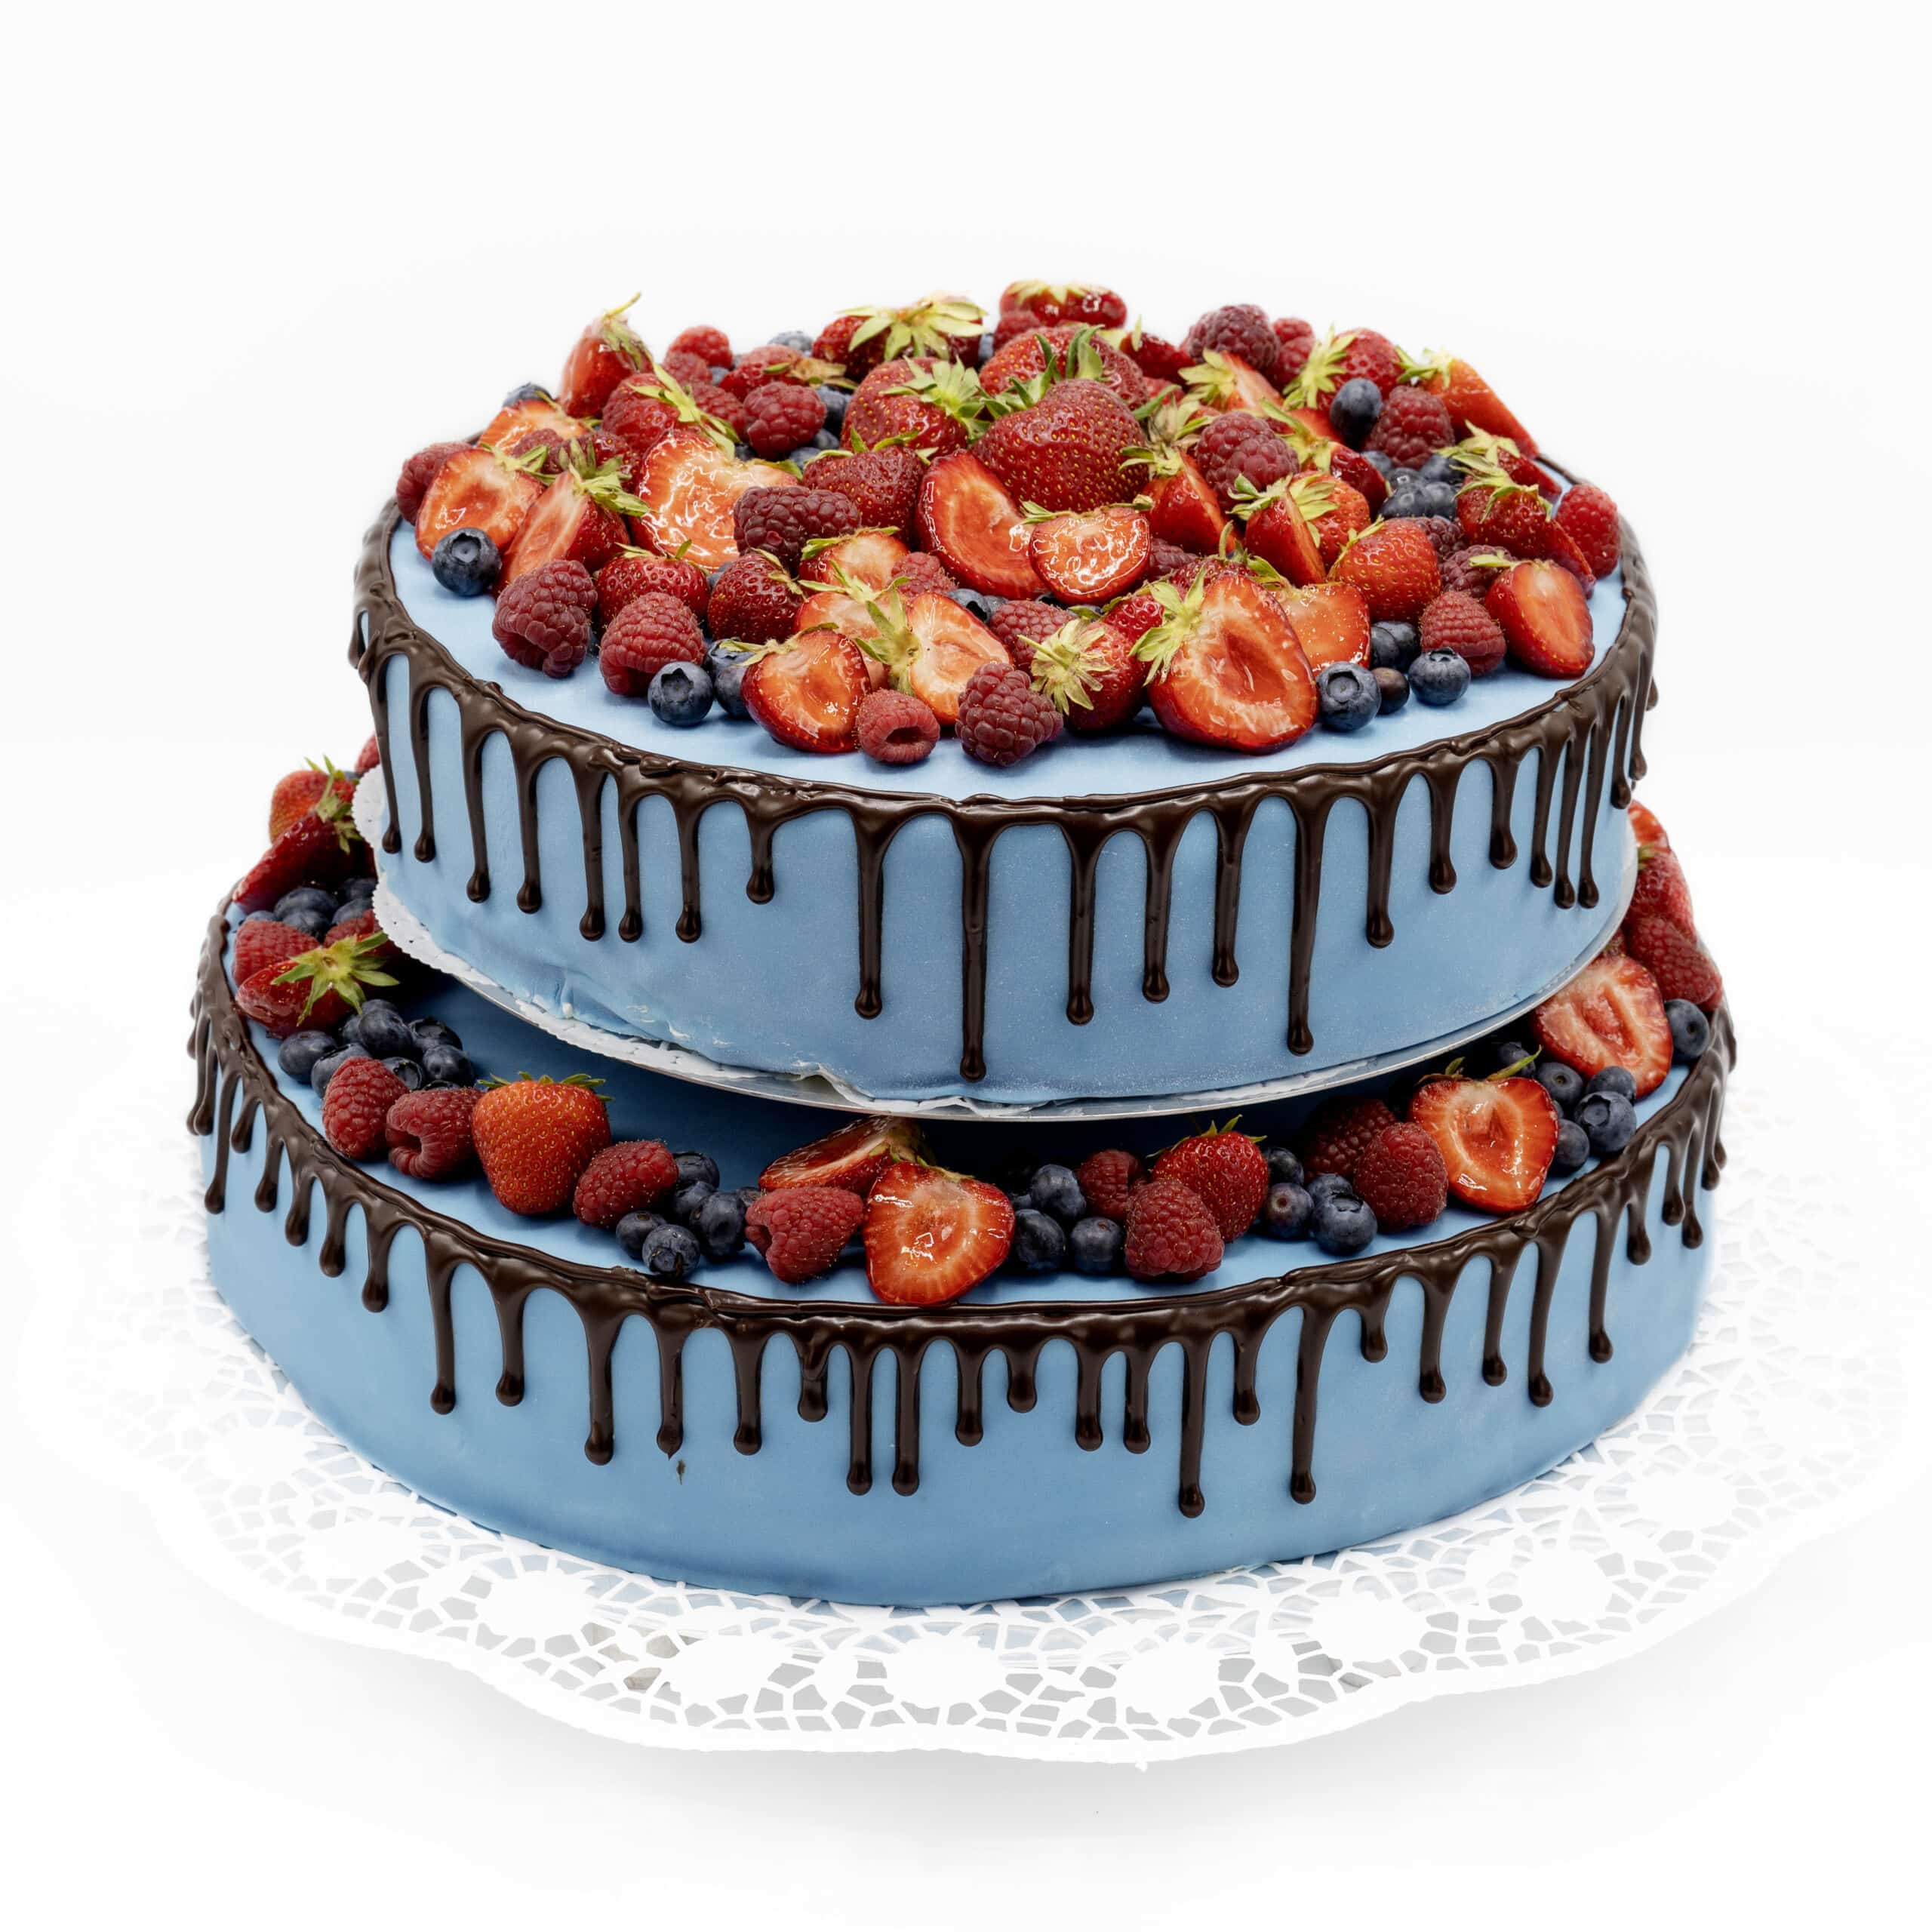 Eine zweistöckige Torte ist mit blauem Fondant überzogen. Am Rand laufen Schokoladen tropfen herunter. Zusätzlich sind beide ebenen mit frischen Beeren dekoriert.